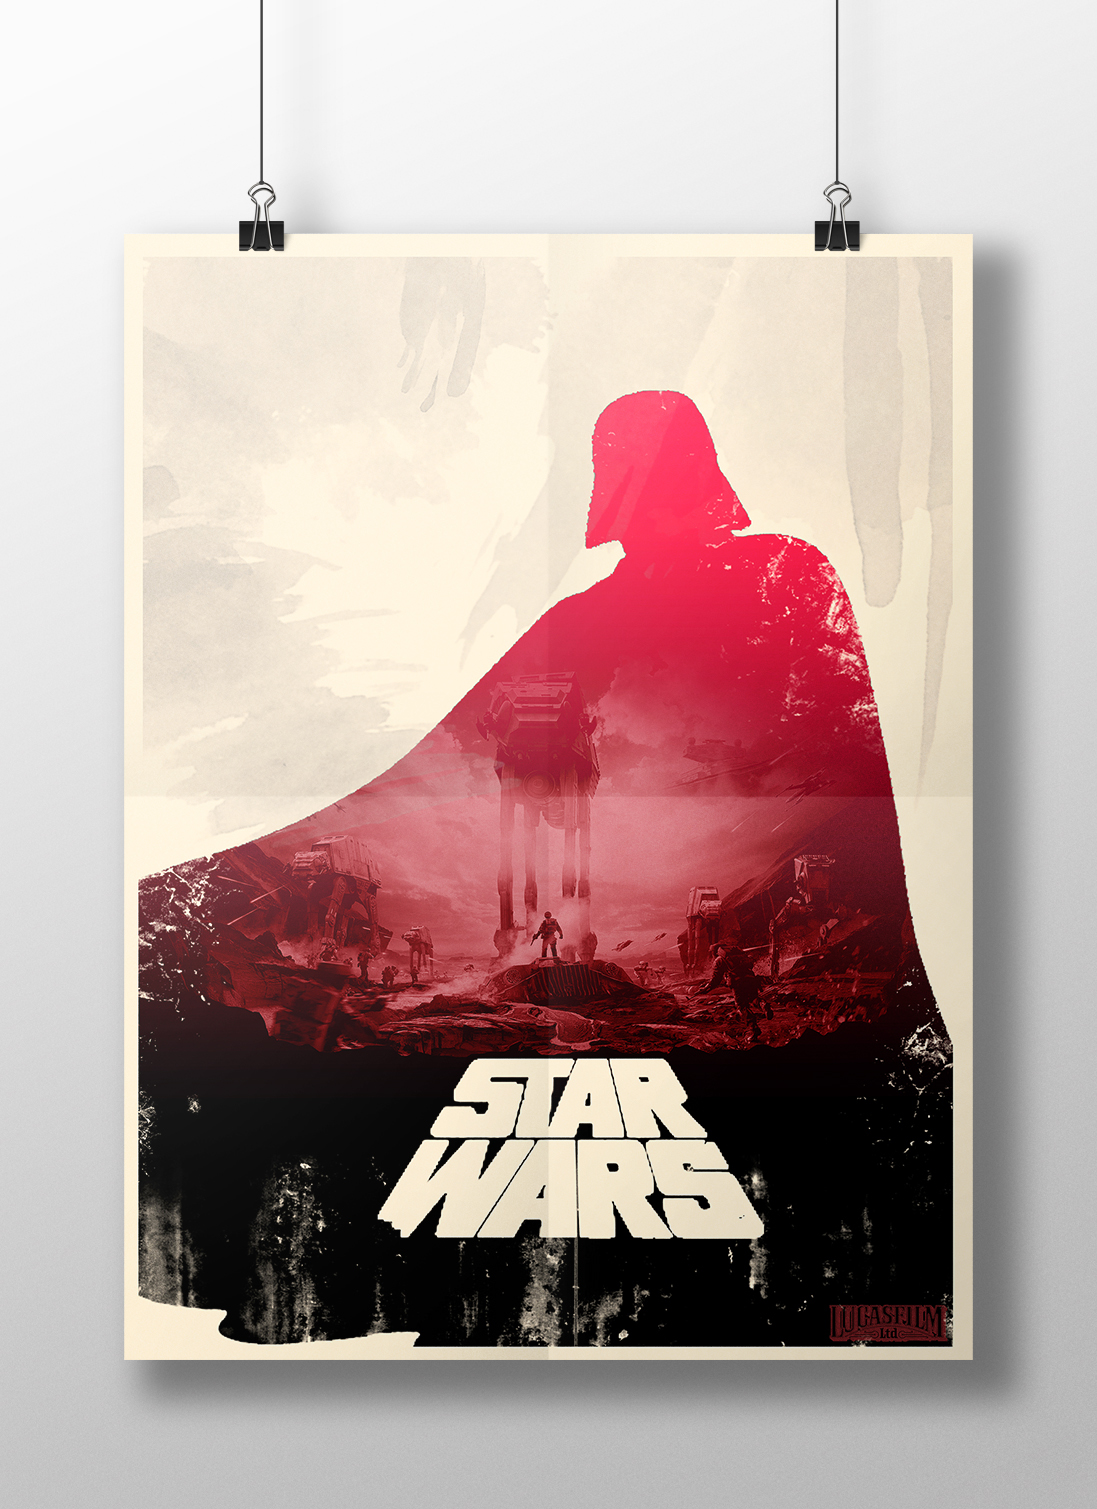 star Wars Starwars star wars photoshop poster ilustation Lucasfilm